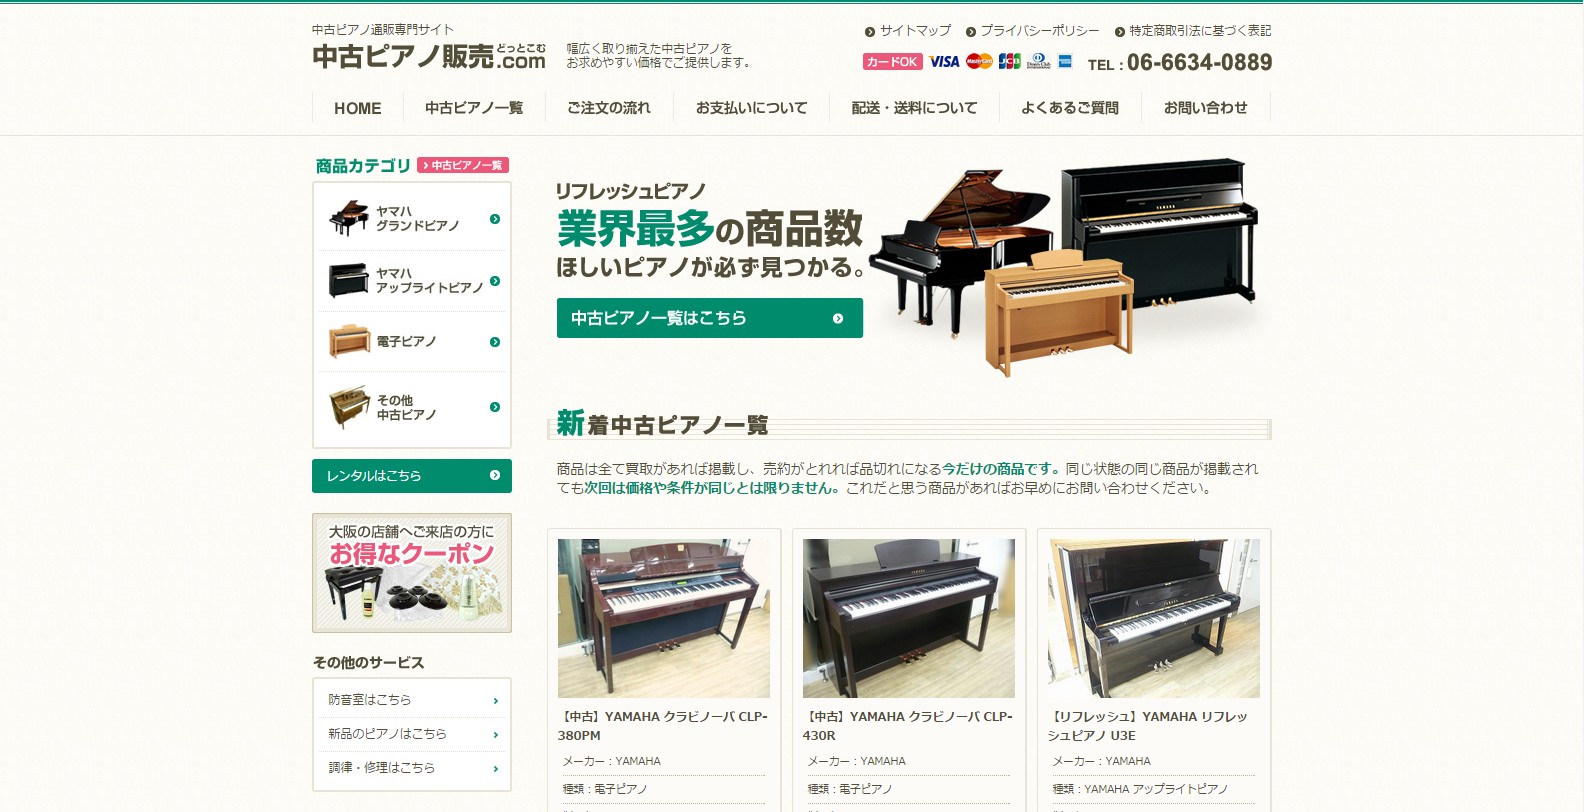 中古ピアノ販売.com様